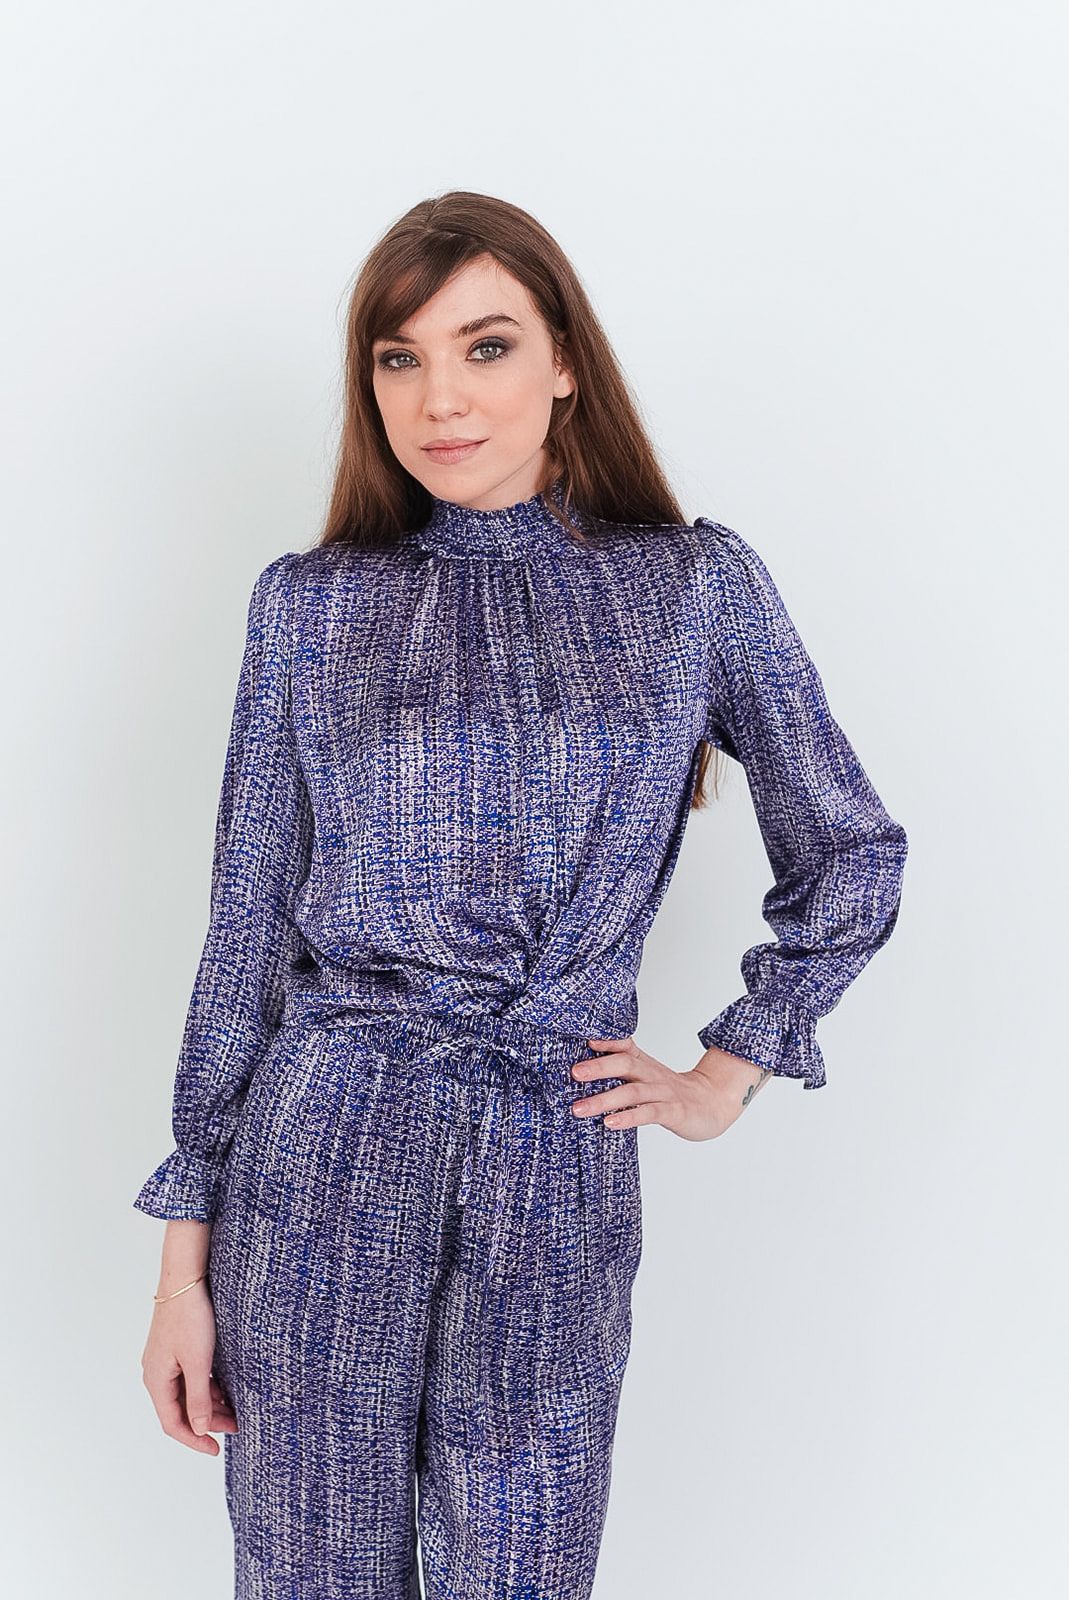 Stella Top | Tiffany's Tweed in Lavender